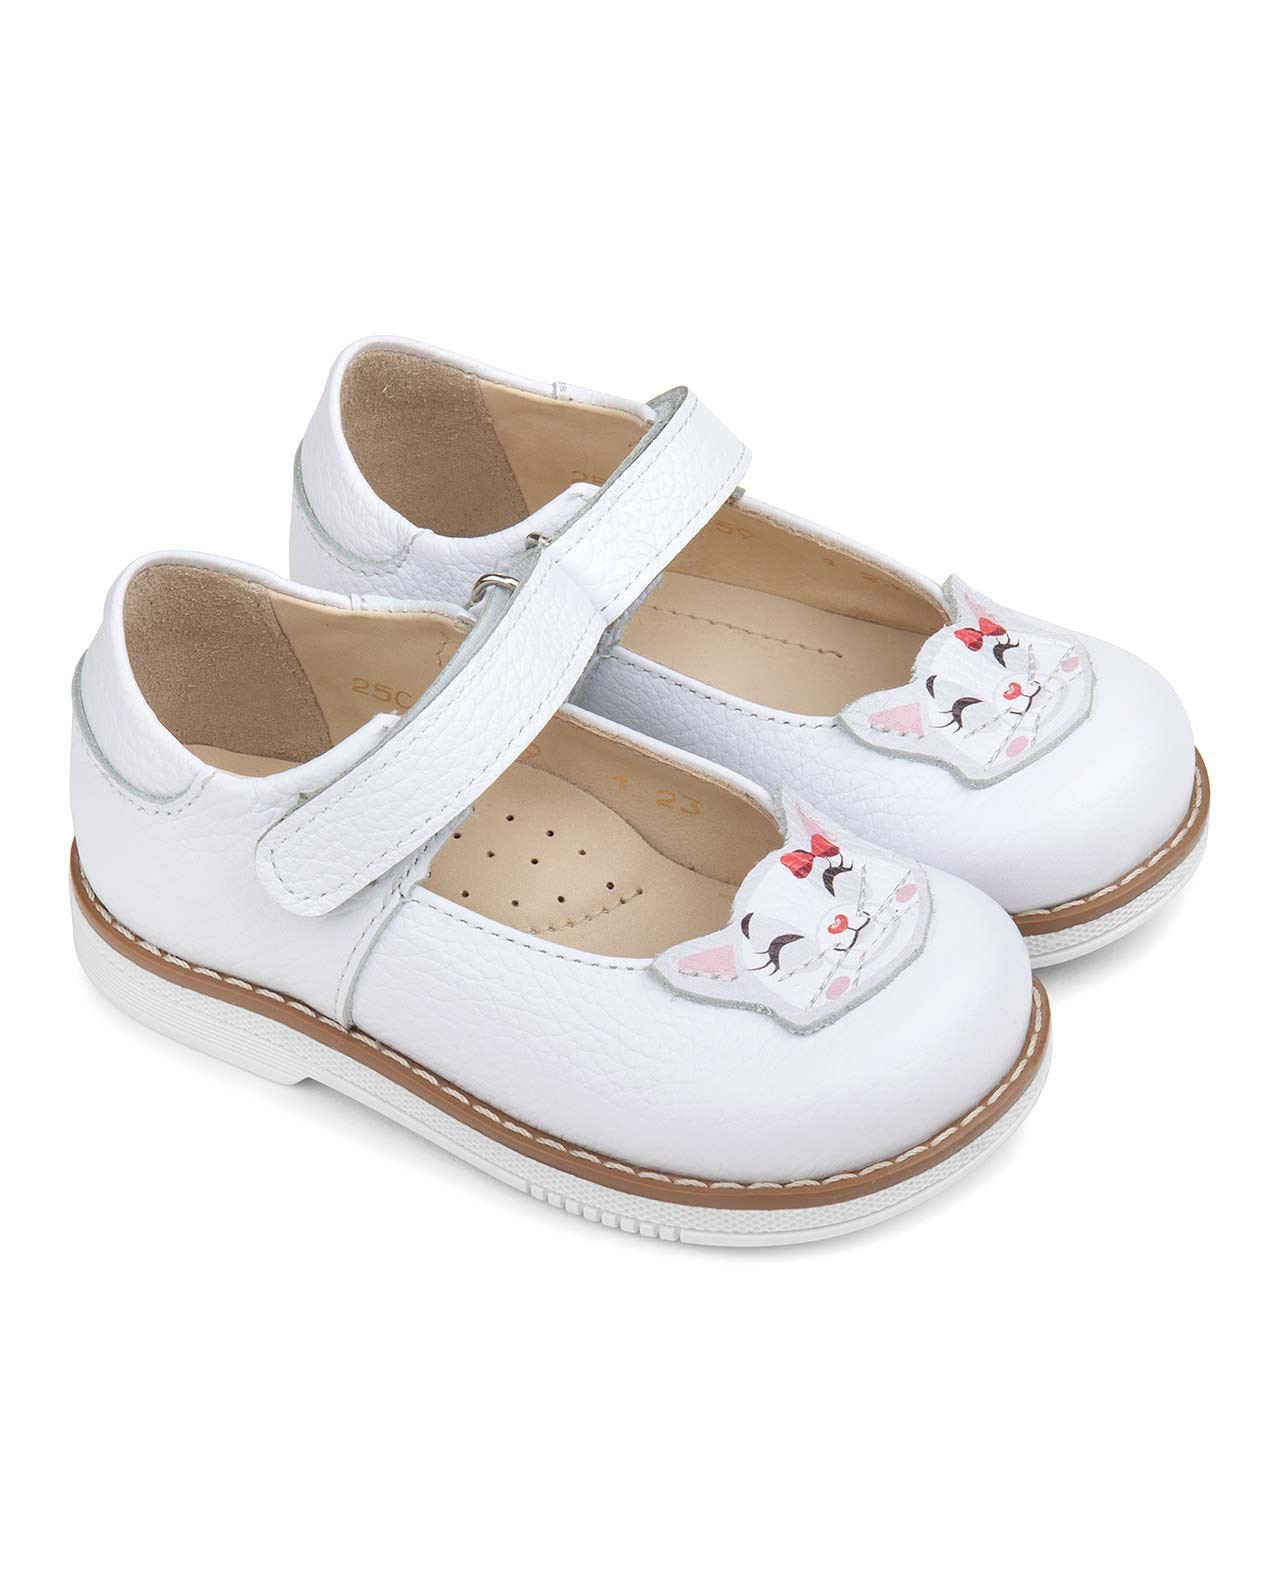 Туфли детские TAPIBOO ХОББИ кошка (81455, 32) сандалии детские tapiboo хобби 71315 32